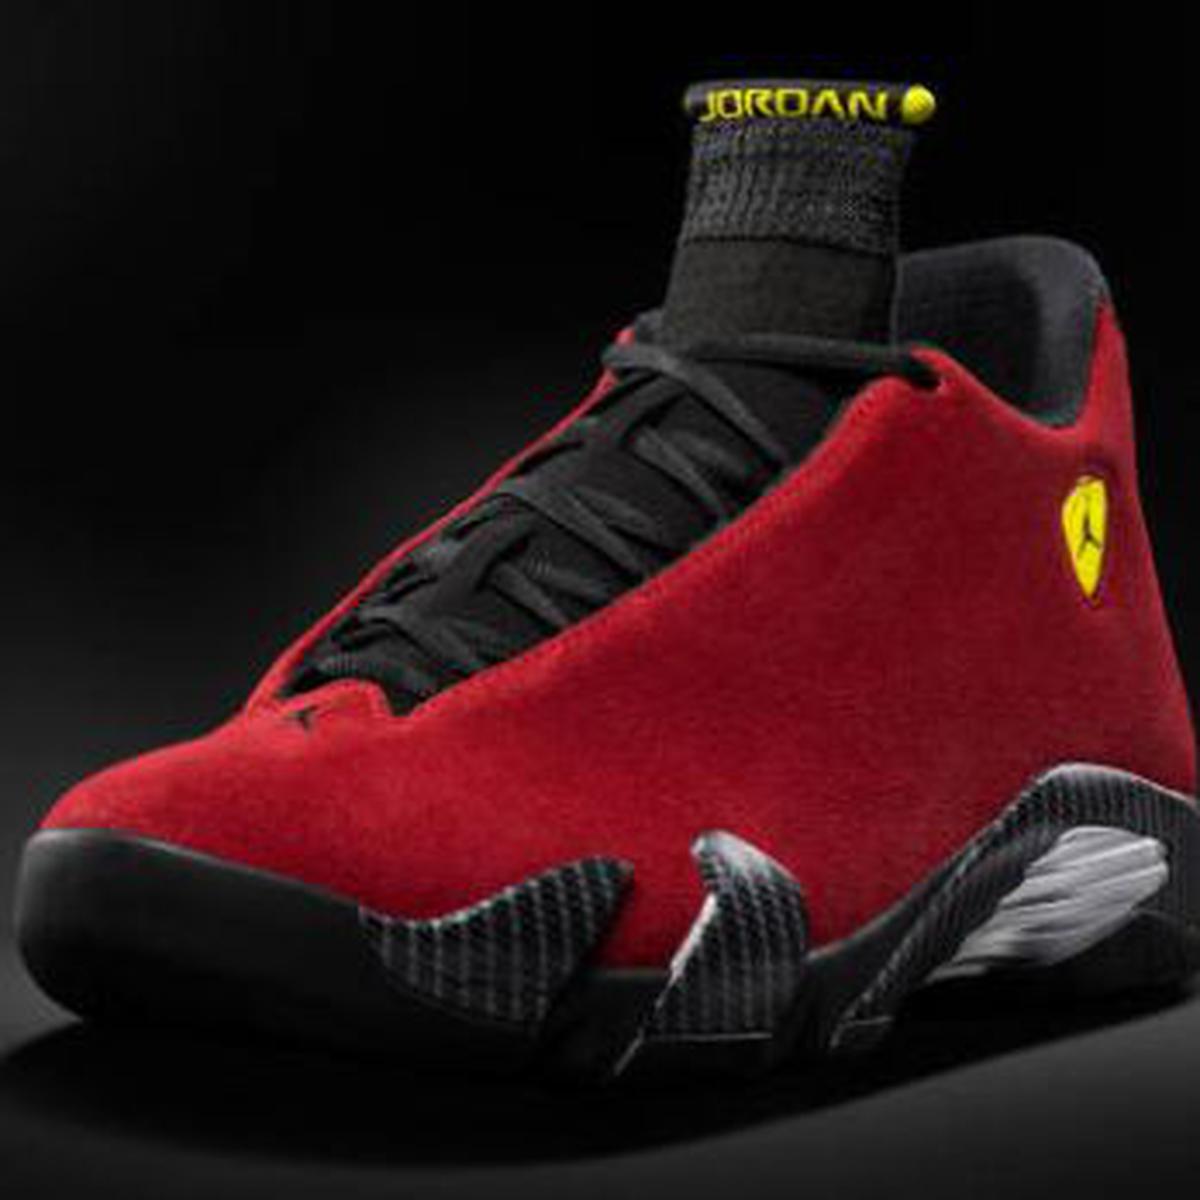 Nike lanza zapatillas Air Jordan inspiradas en Ferrari | RUEDAS-TUERCAS COMERCIO PERÚ